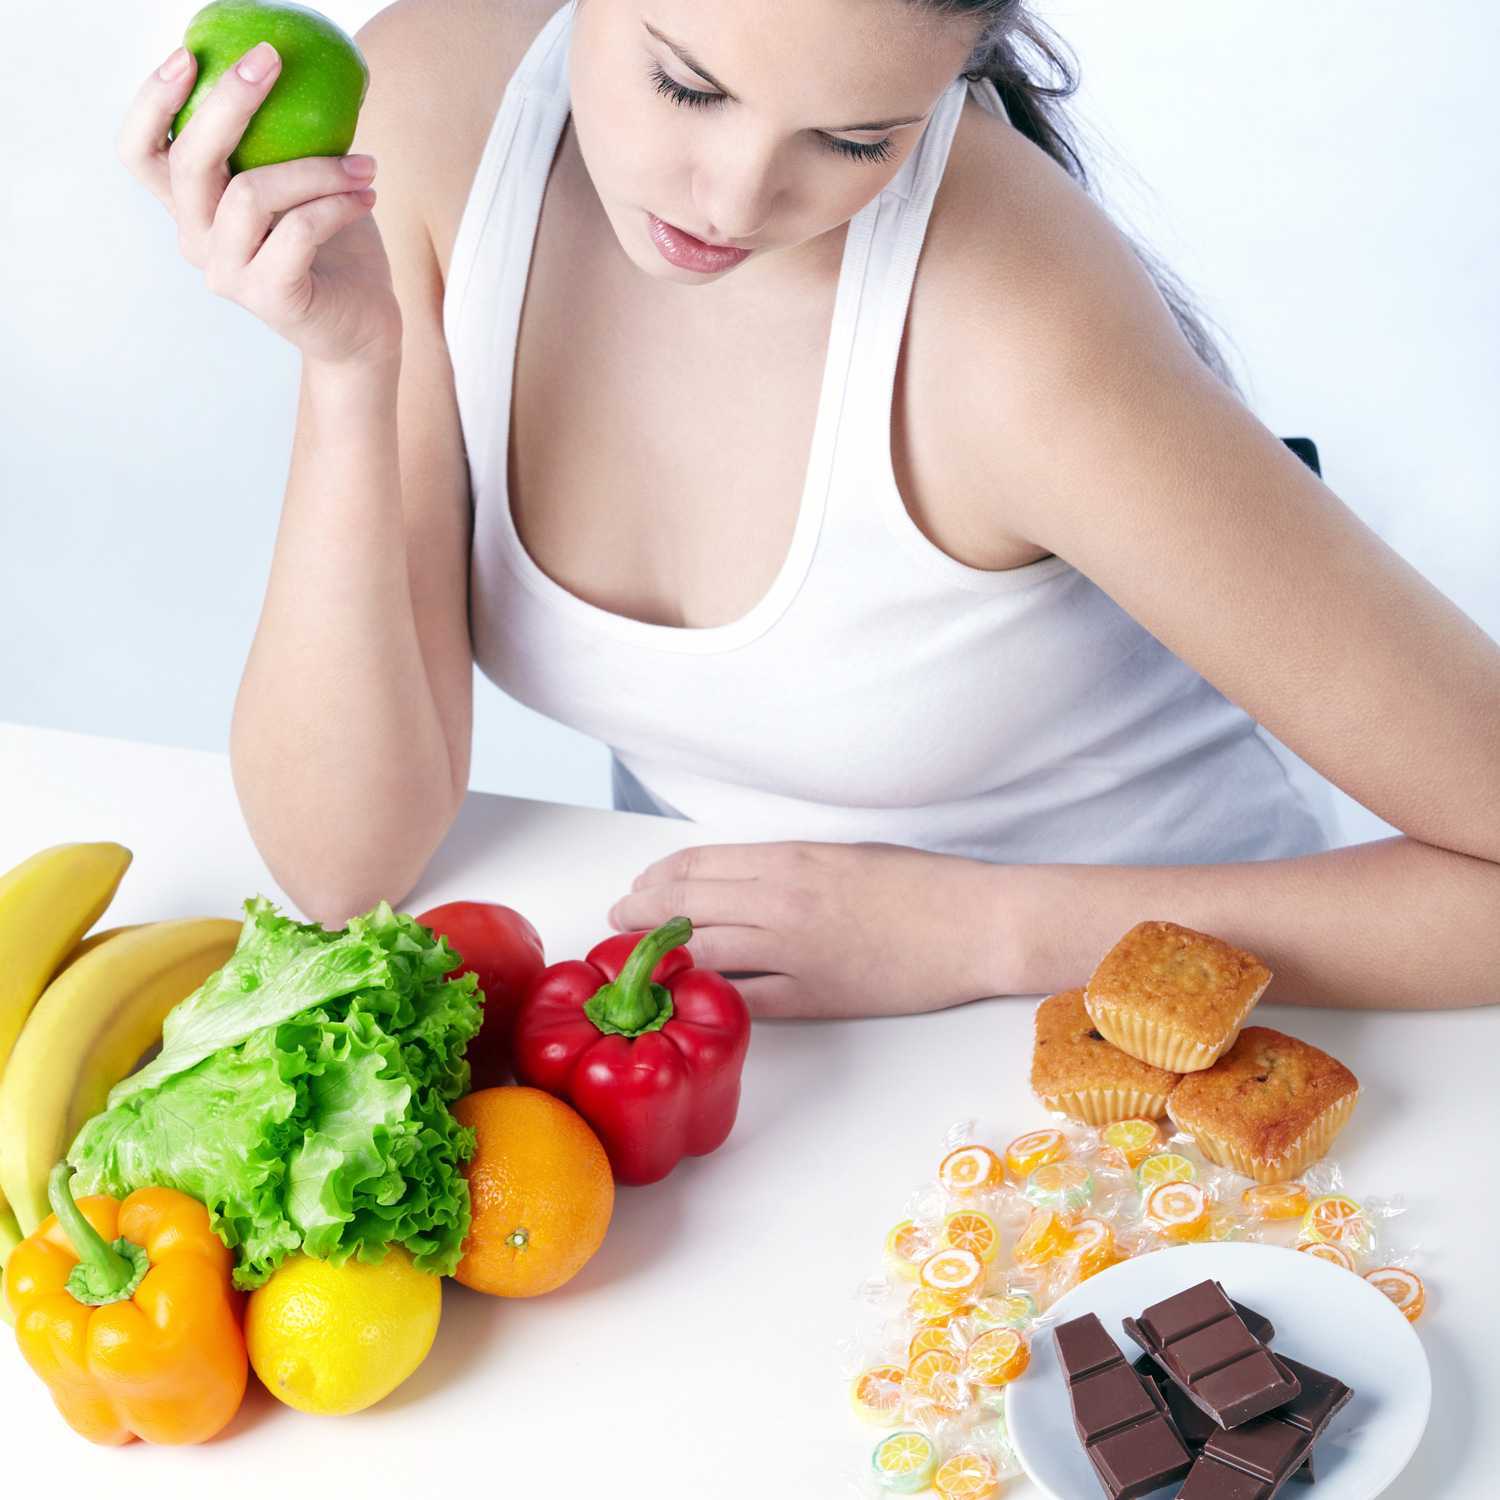 Фитнес питание: правила и рекомендации при похудении для женщин